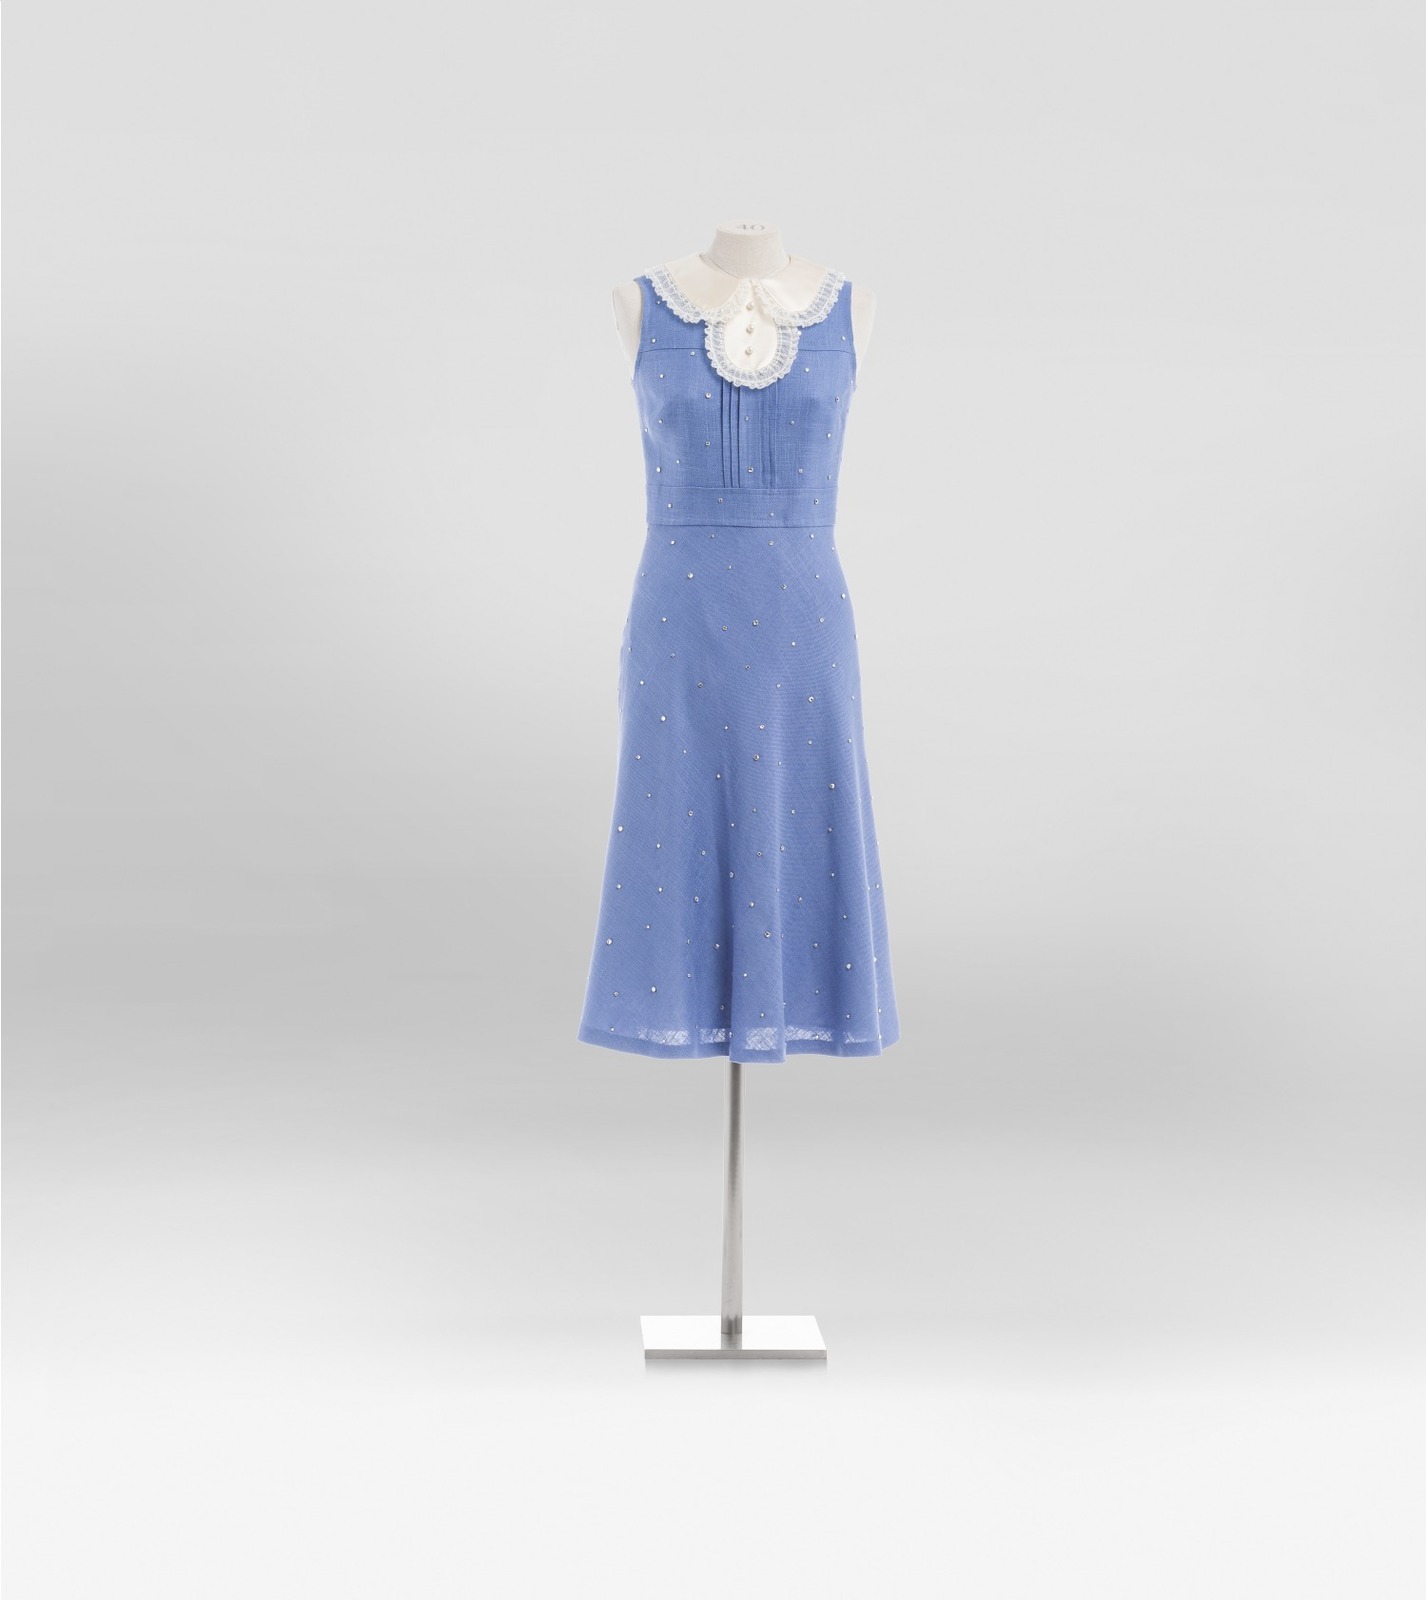 ミュウミュウ、ヴィンテージアイテムをリメイクした“1点物”ドレス - 青山店で全8種類発売 - ファッションプレス